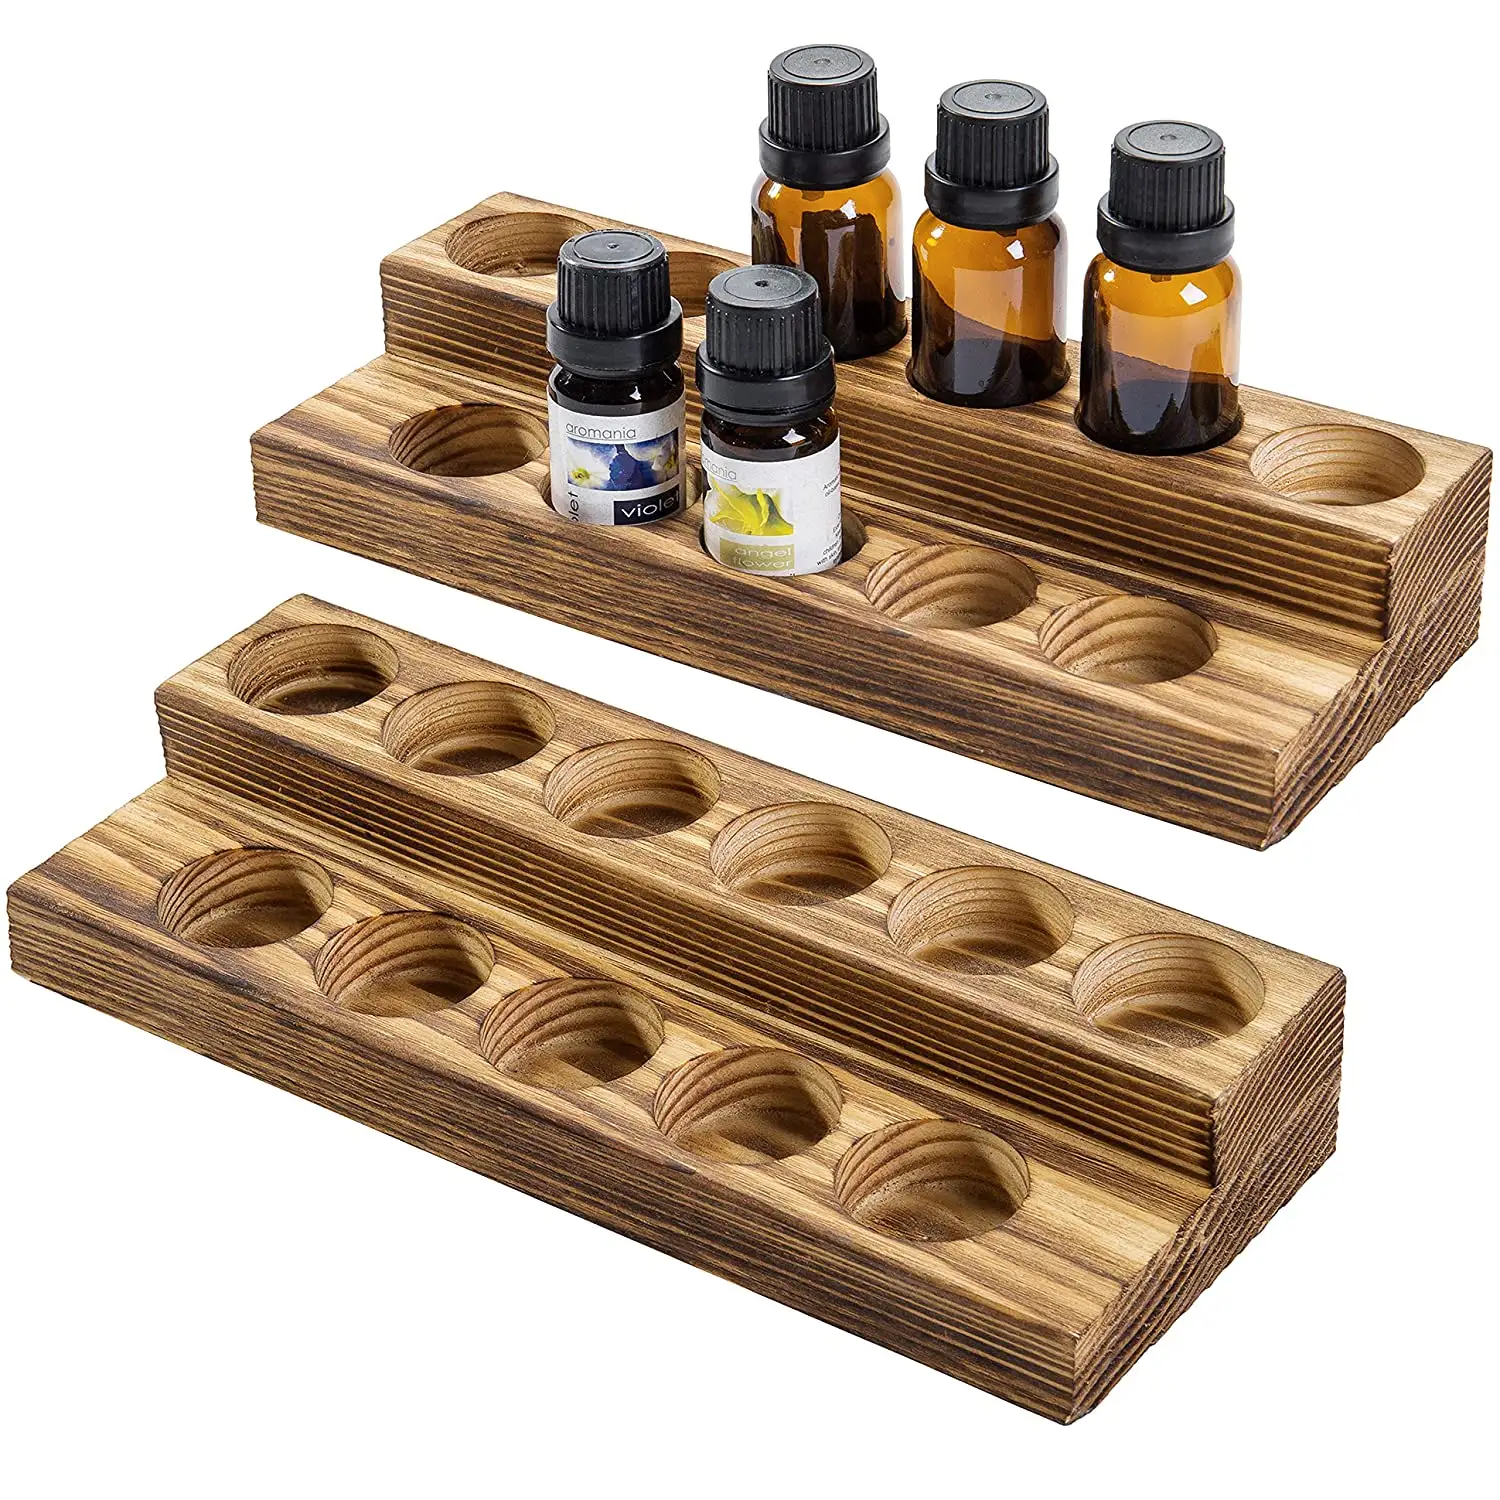 Gesew — support en bois massif rustique pour bouteilles, ensemble de 2 présentoirs pour huiles essentielles, en bois fumé, pour organisateur de bouteilles, 11 pièces